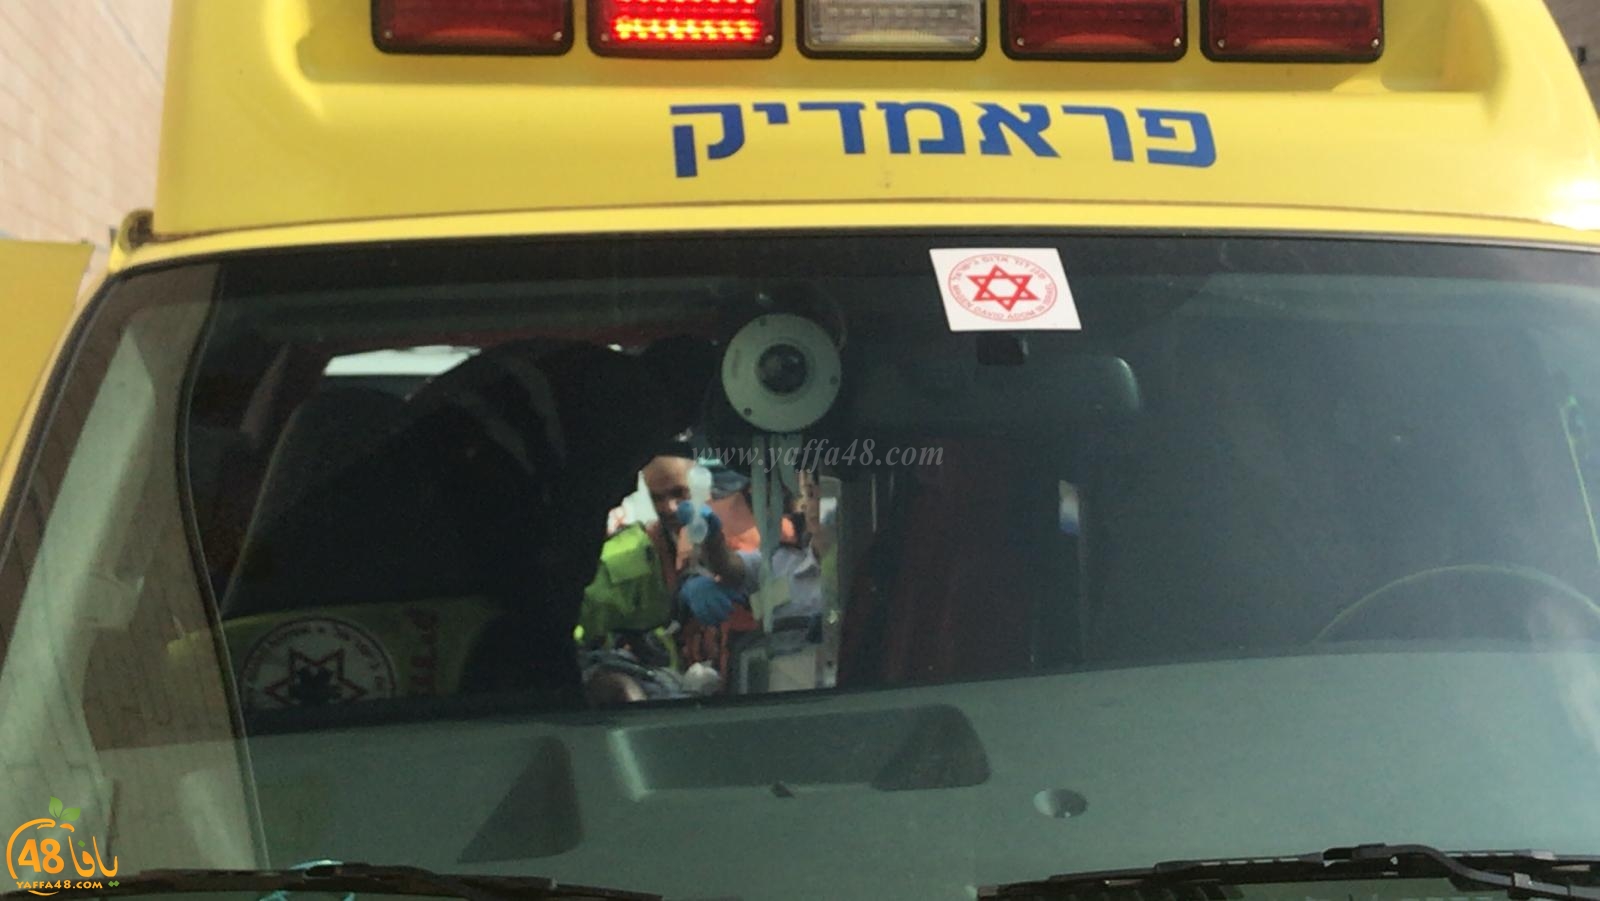  يافا: عمليات انعاش لشخص أصيب بنوبة قلبية حادة داخل حافلة بمفرق فولفسون 